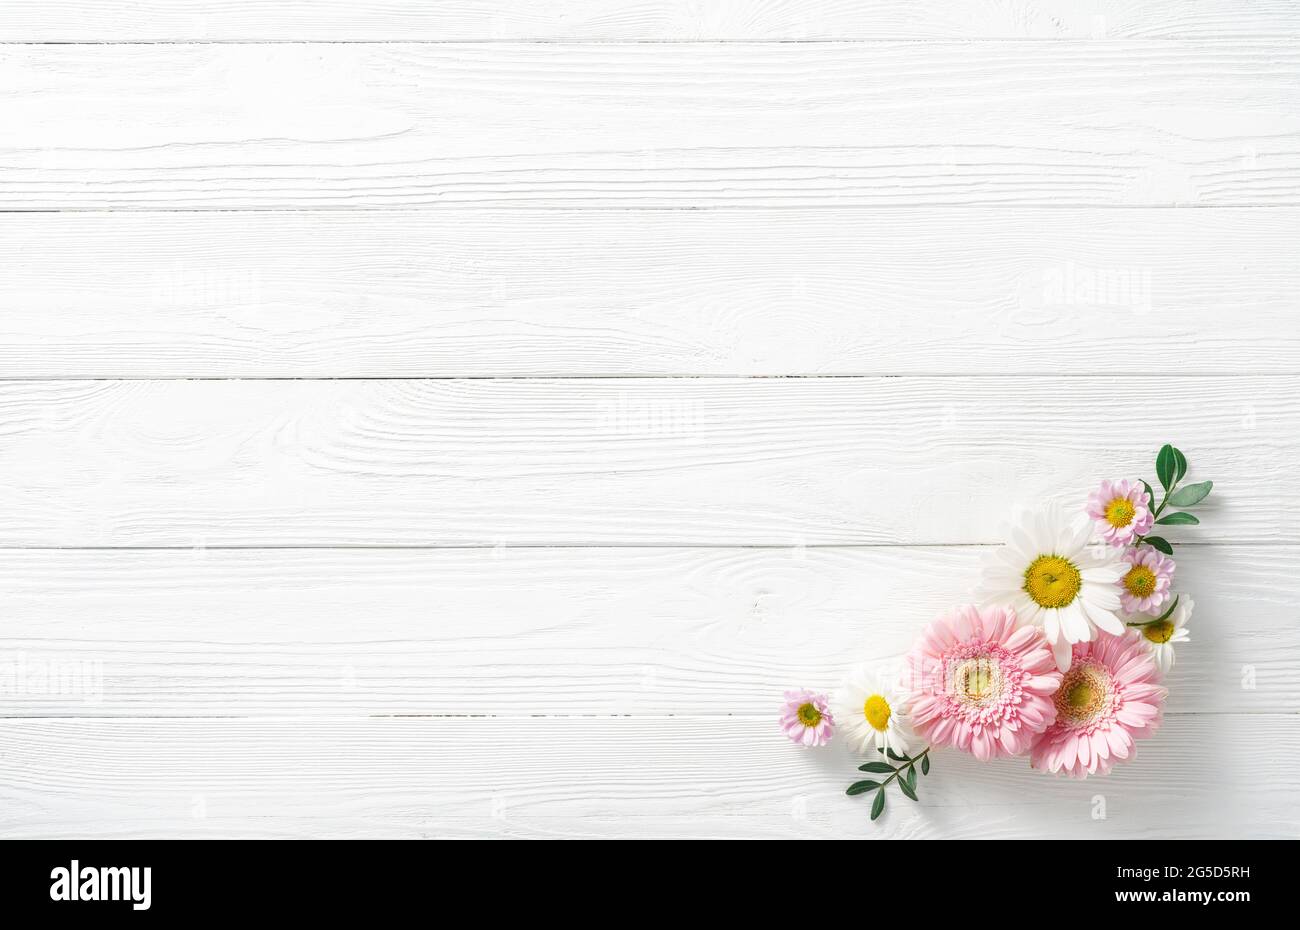 Composizione dei fiori. Fiori bianchi su sfondo bianco di legno. Mockup di nozze con fiori rosa e bianchi. Disposizione piatta, vista dall'alto, telaio. Gerbera, camomi Foto Stock